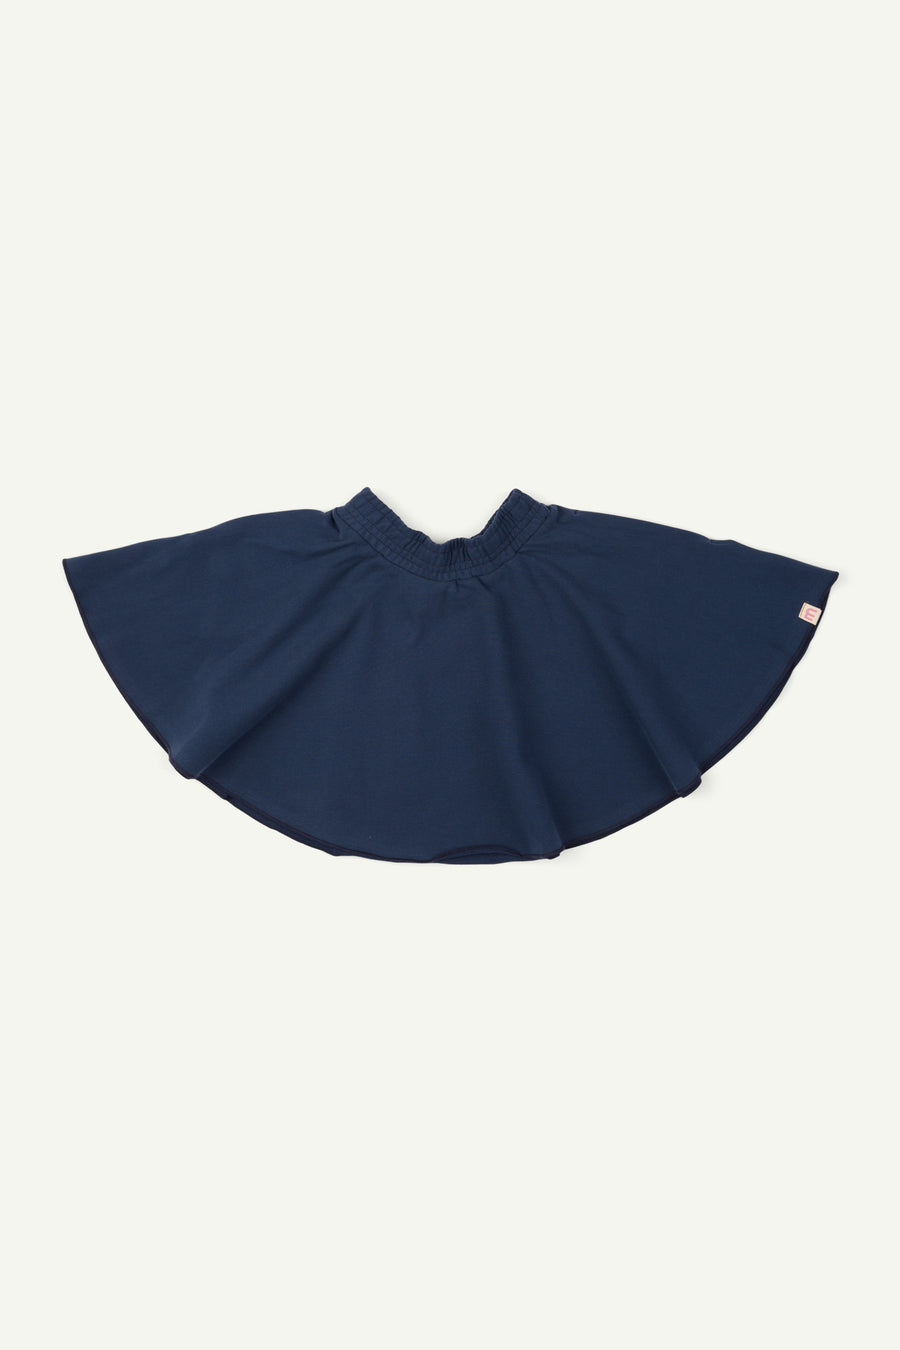 Navy skirt